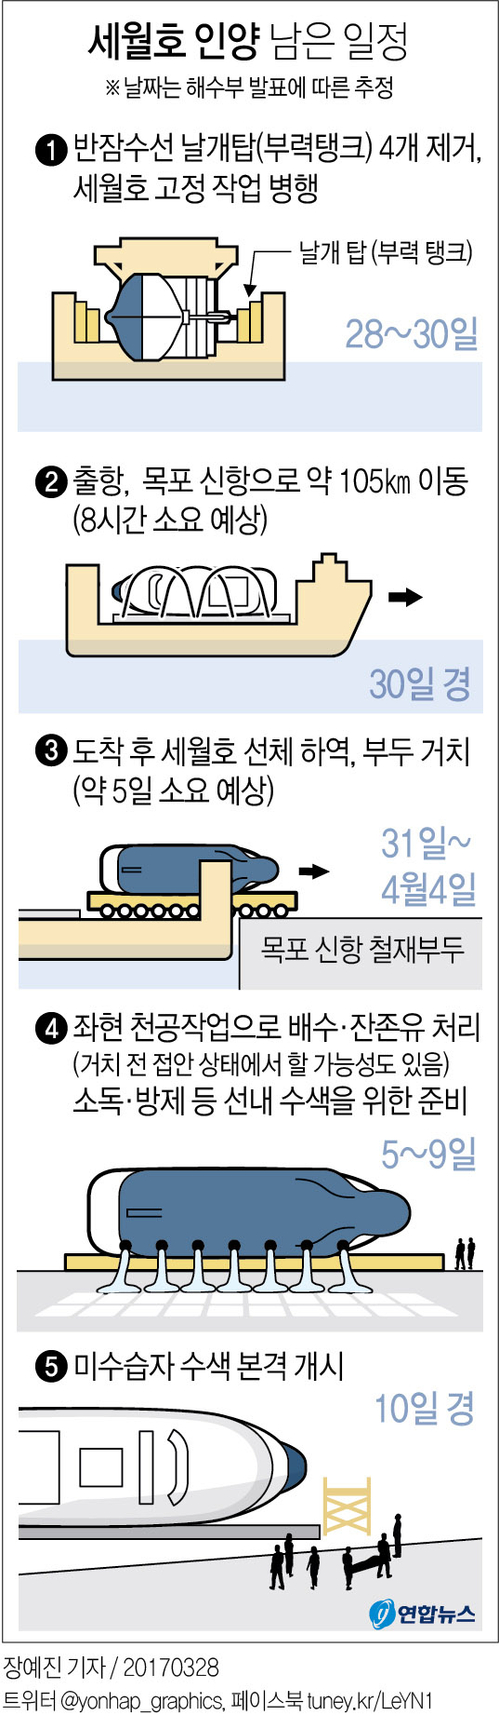 [그래픽] 세월호 인양 남은 일정(28일)